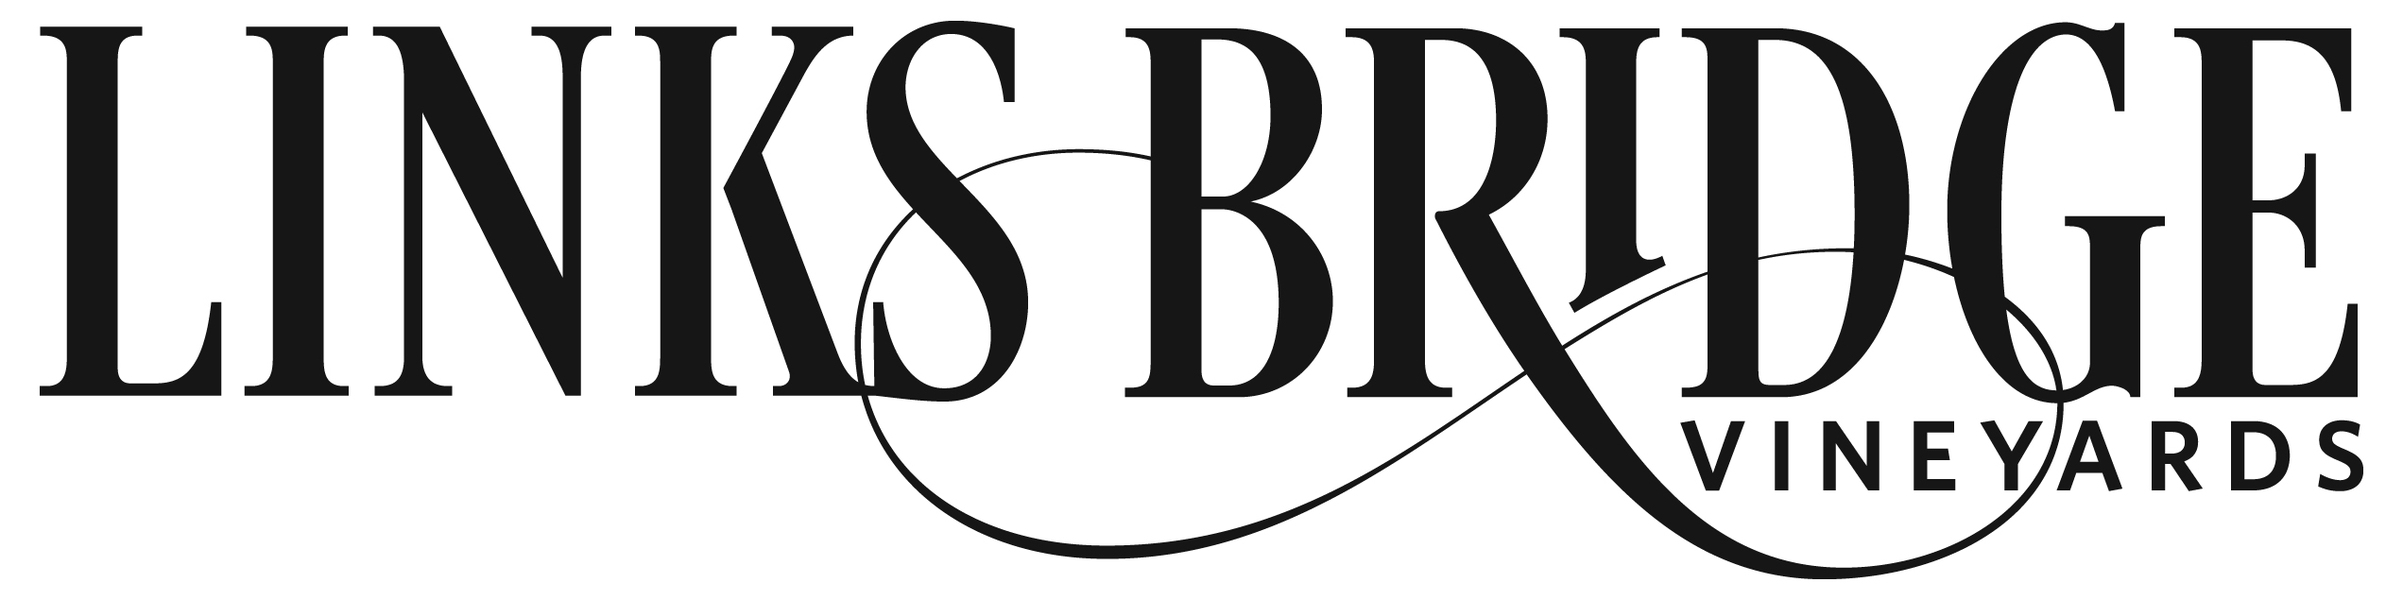 Logo for Links Bridge Vineyards